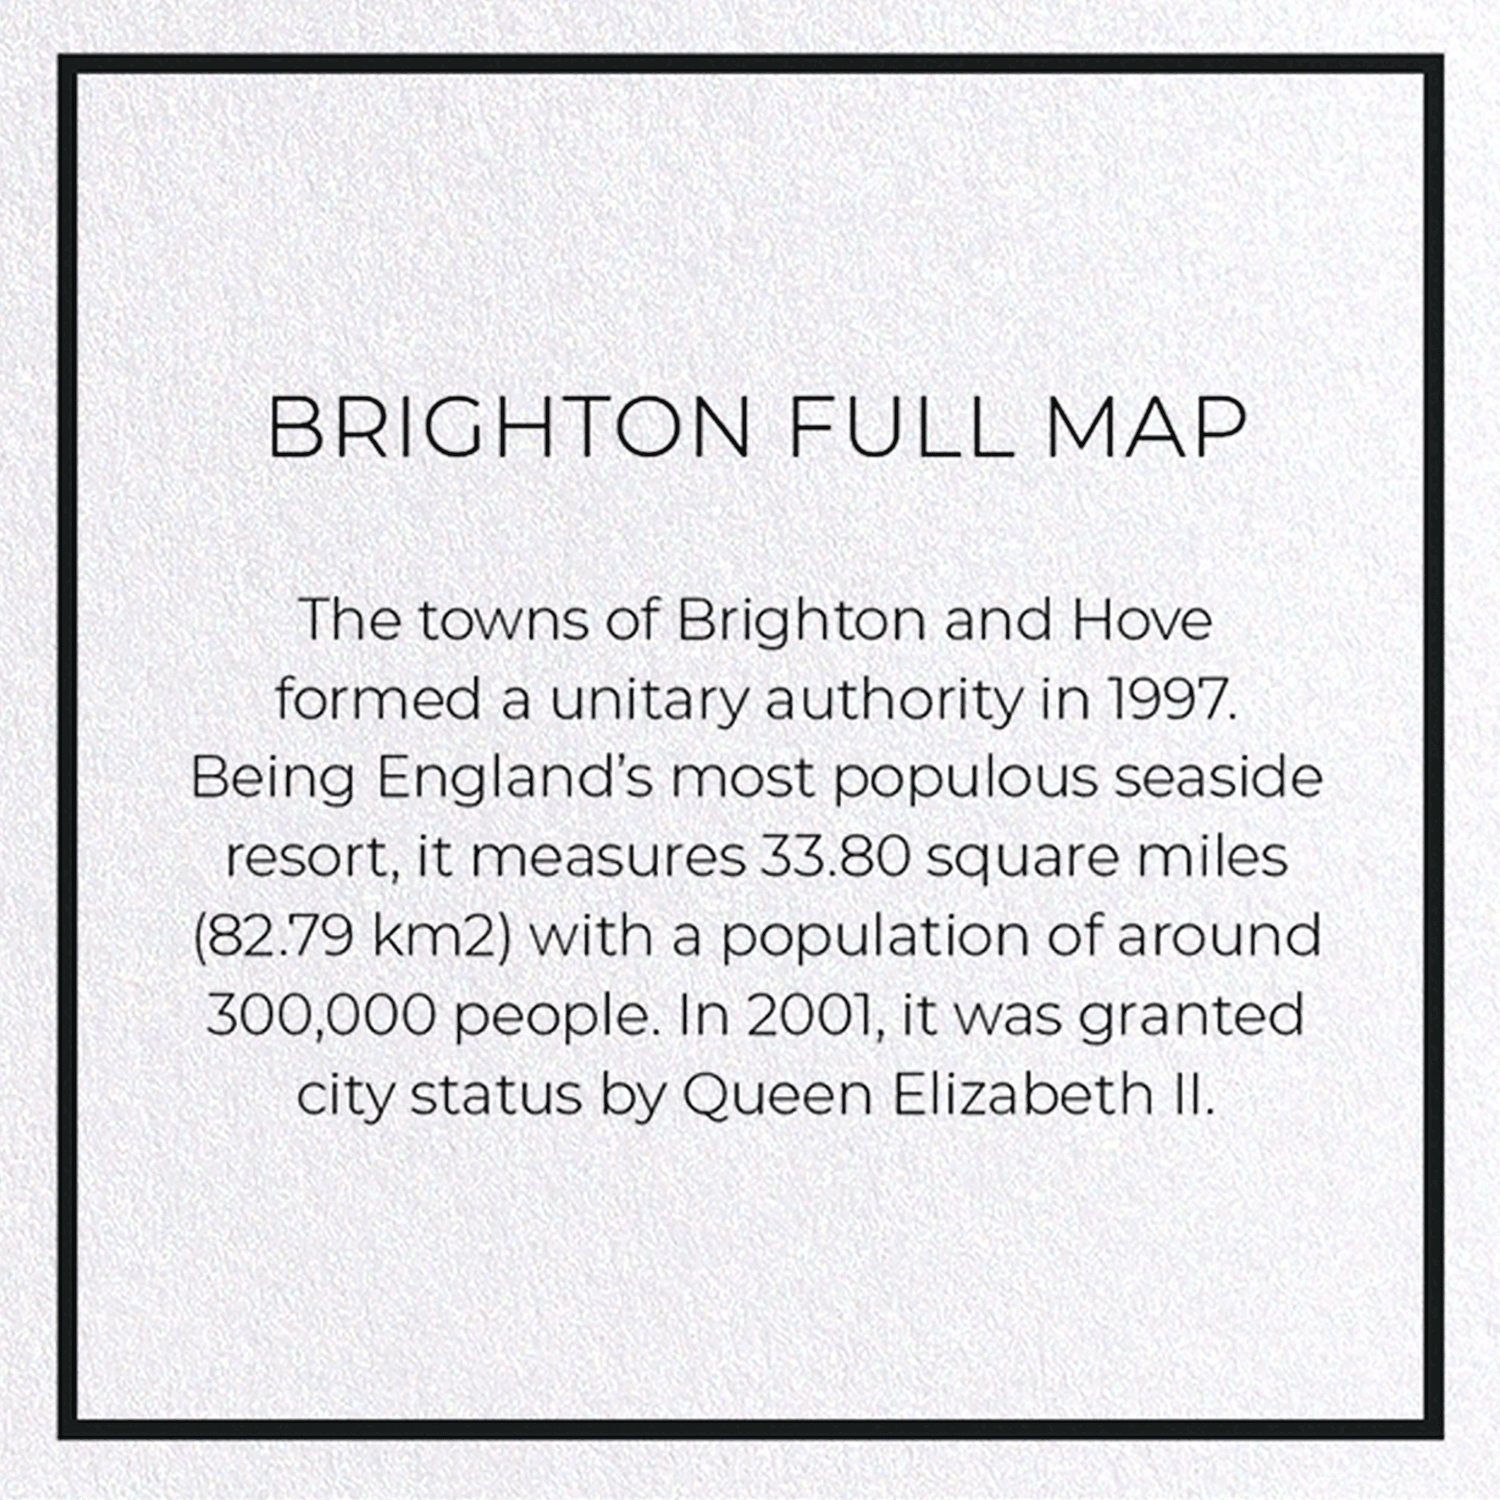 BRIGHTON FULL MAP